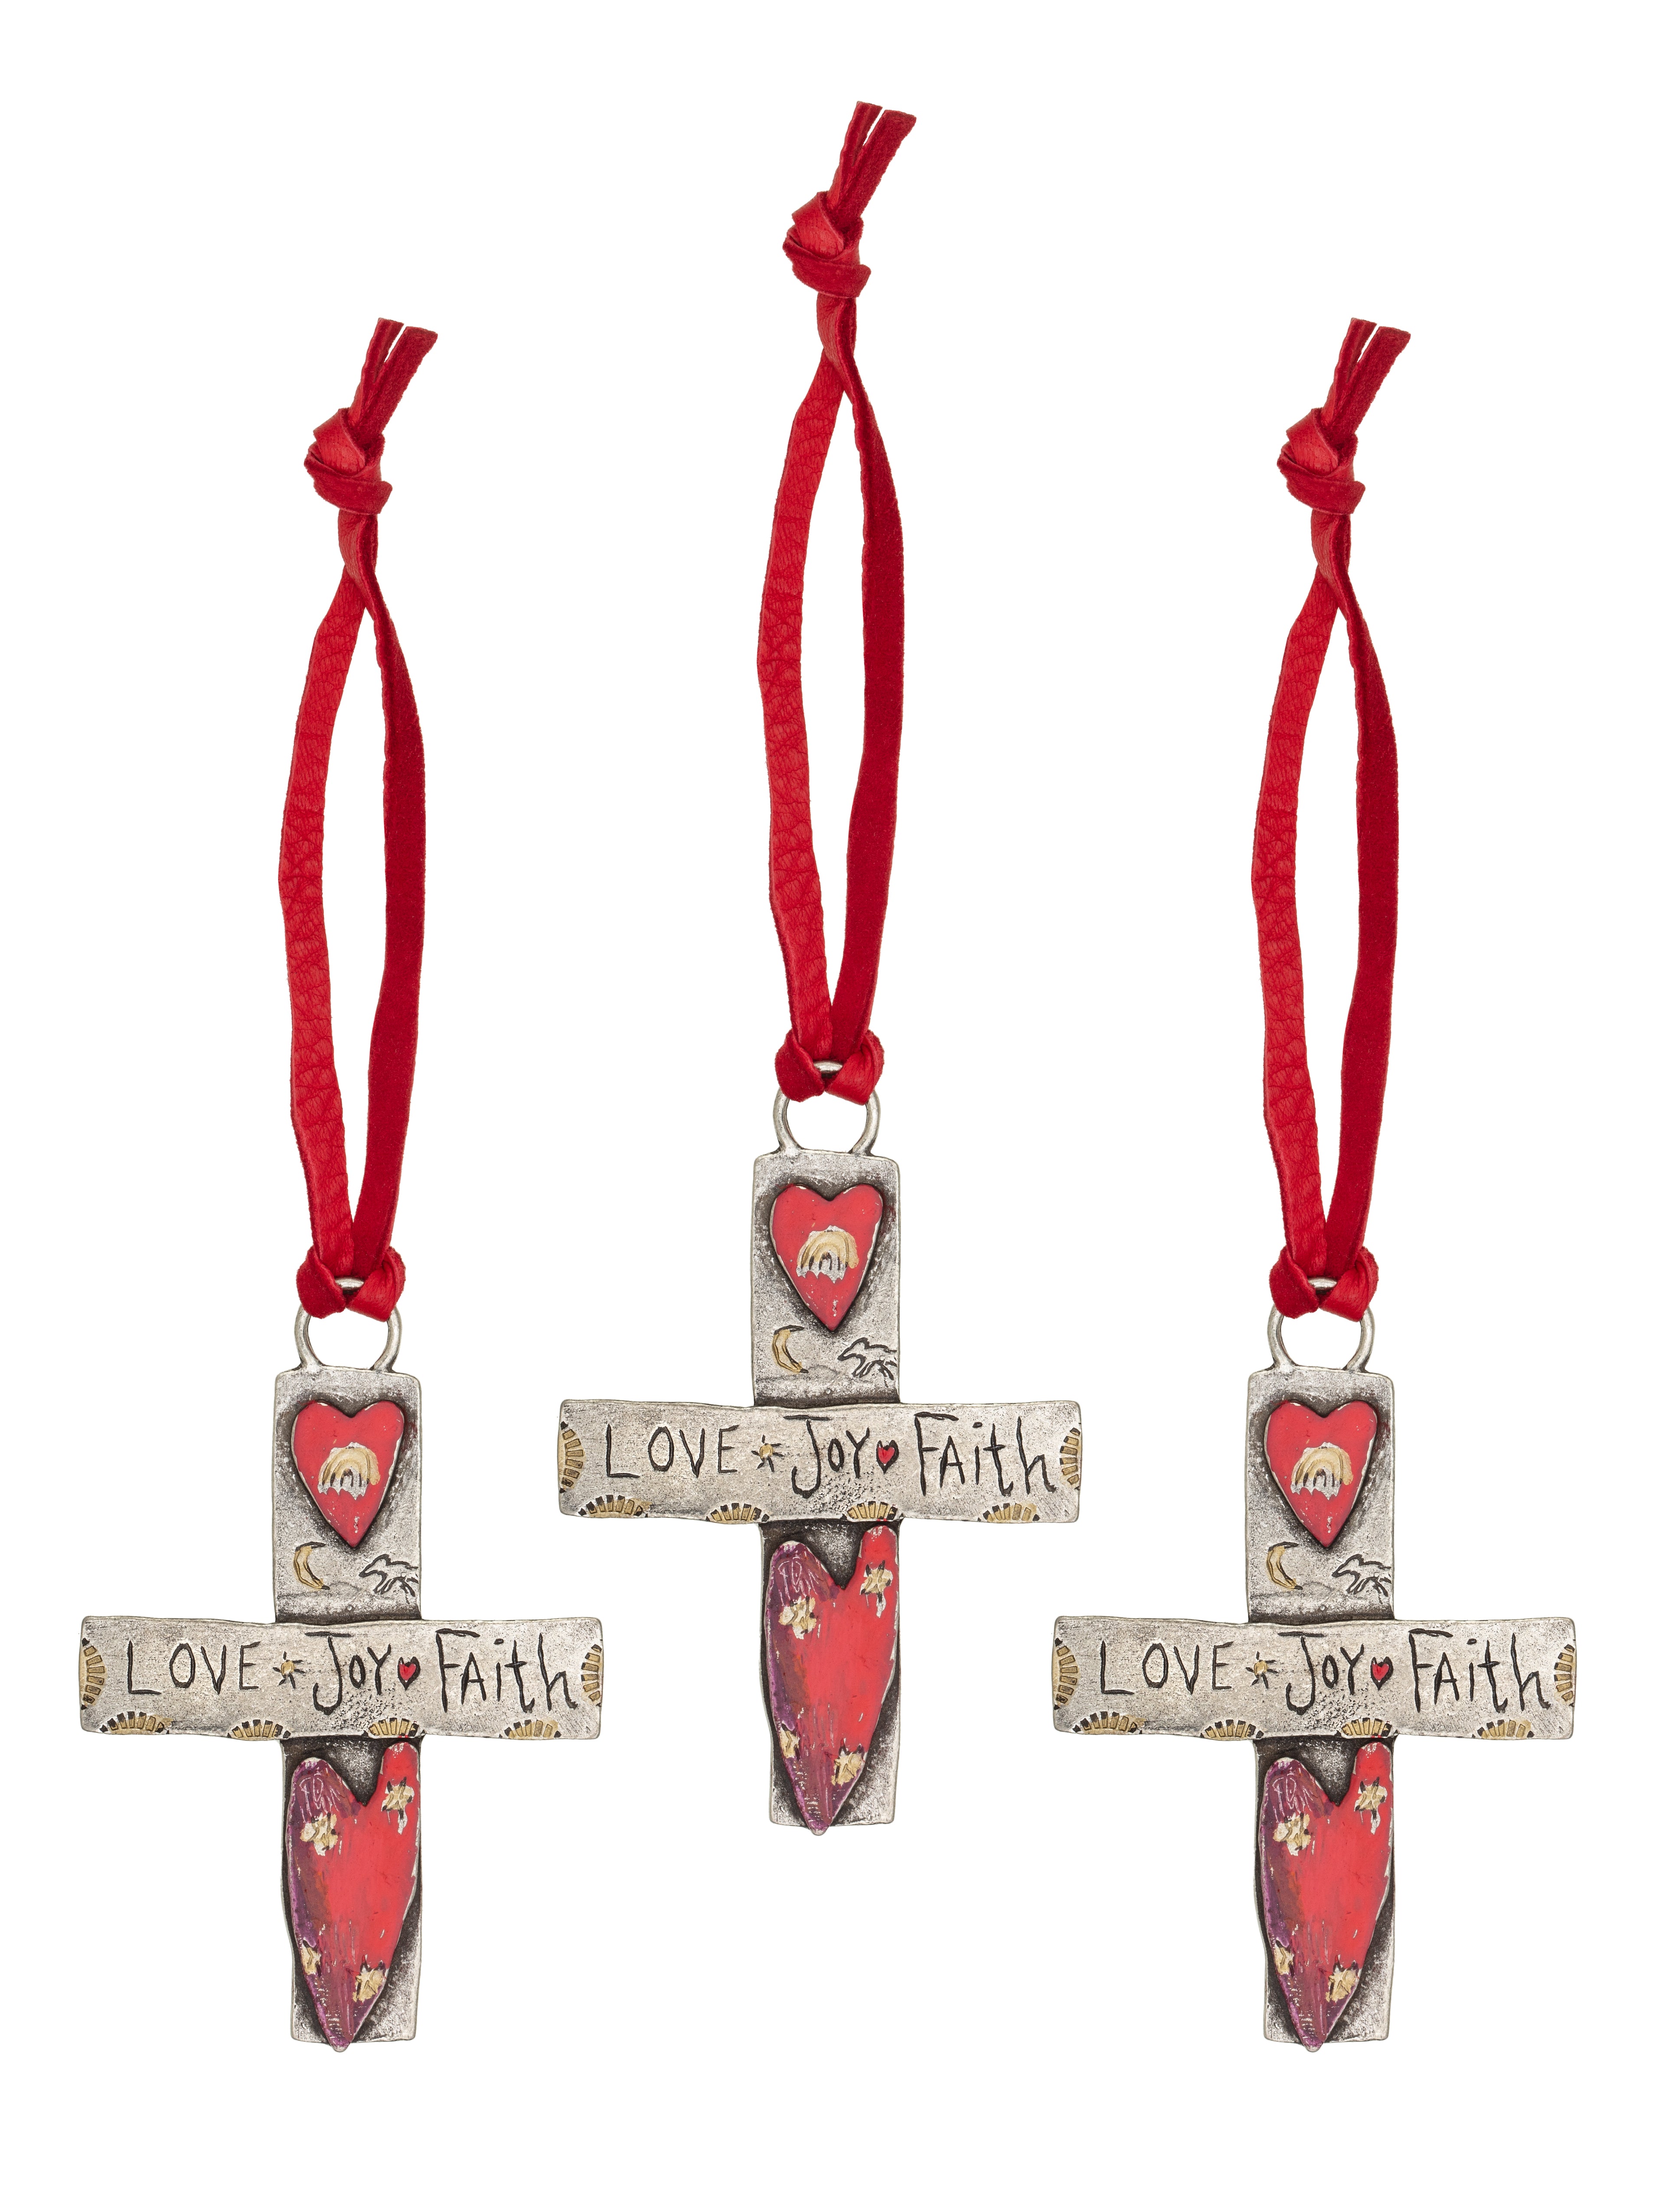 Love, Joy, Faith Cross Ornaments